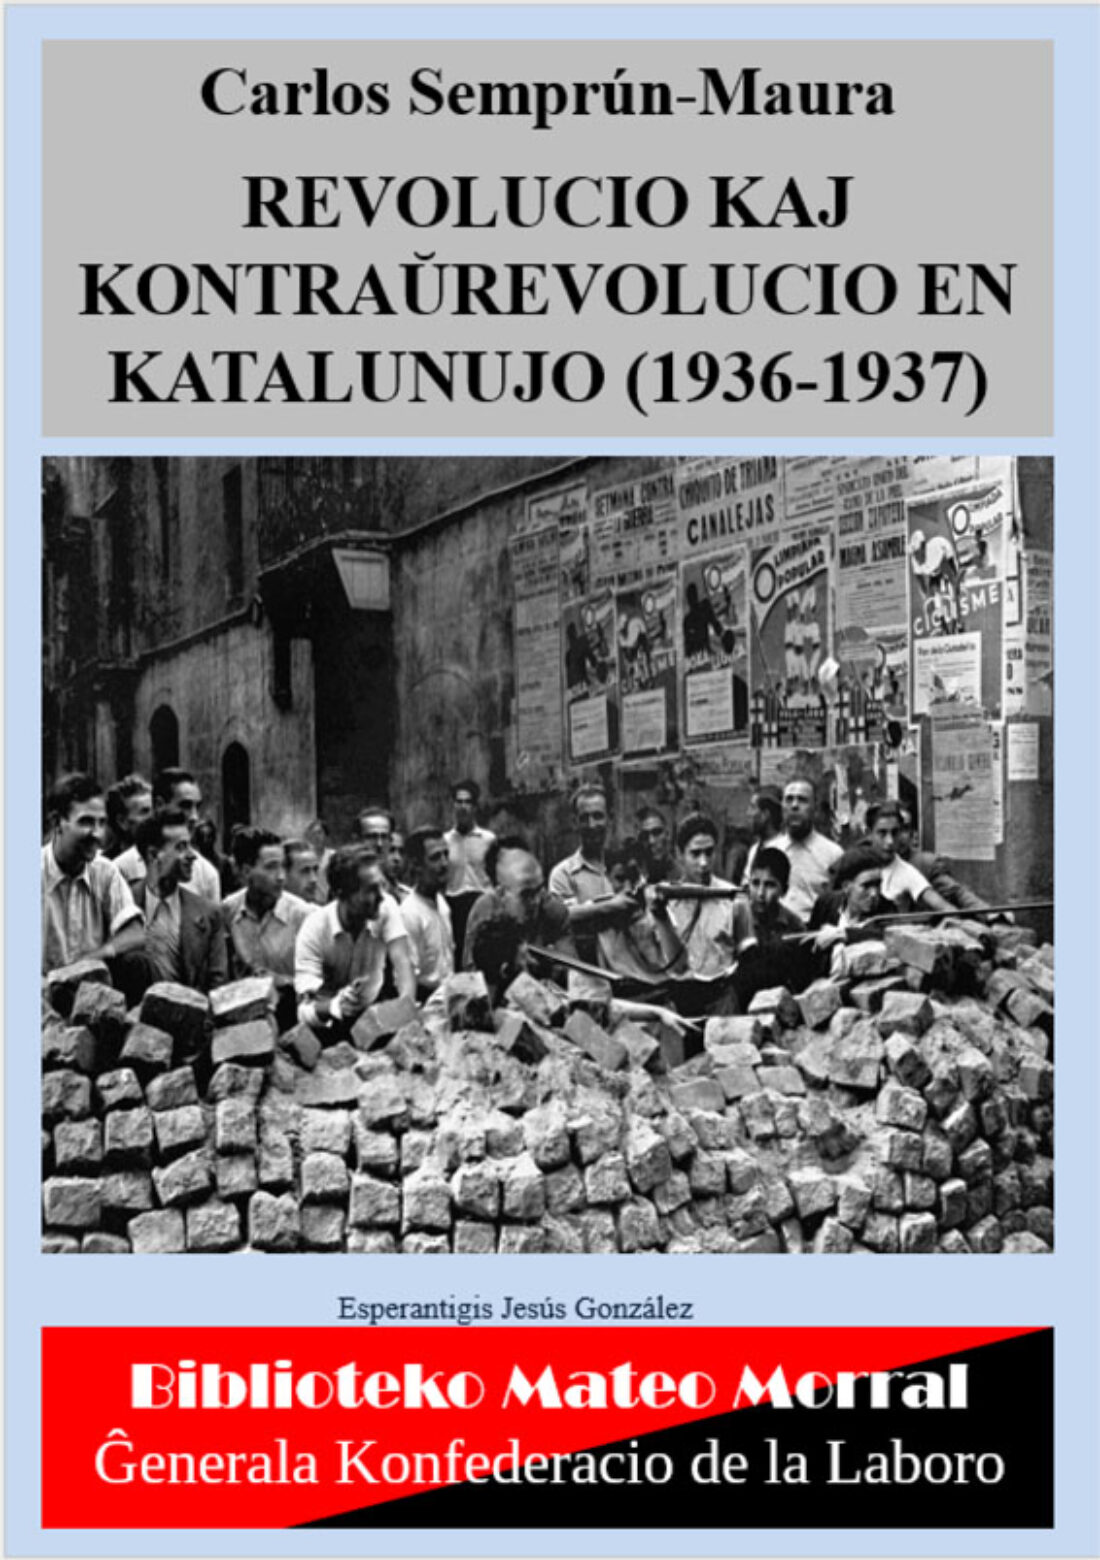 Traducción al esperanto del libro de Carlos Semprún-Maura «Revolución y contrarrevolución en Cataluña (1936-1937)»